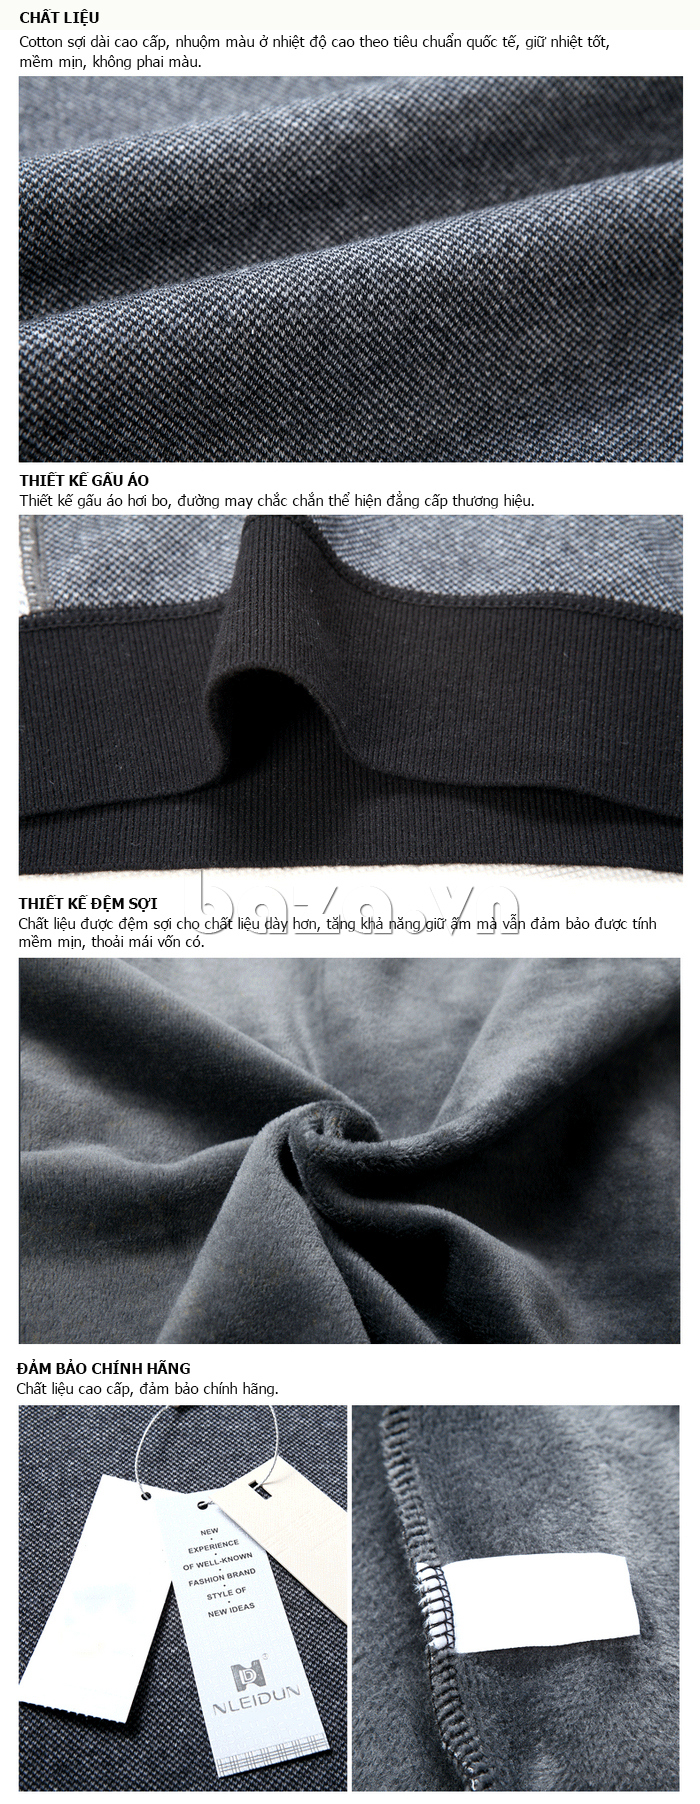 Chất liệu áo cotton sợi dài cao cấp, được nhuộm màu ở nhiệt độ cao theo tiêu chuẩn quốc tế